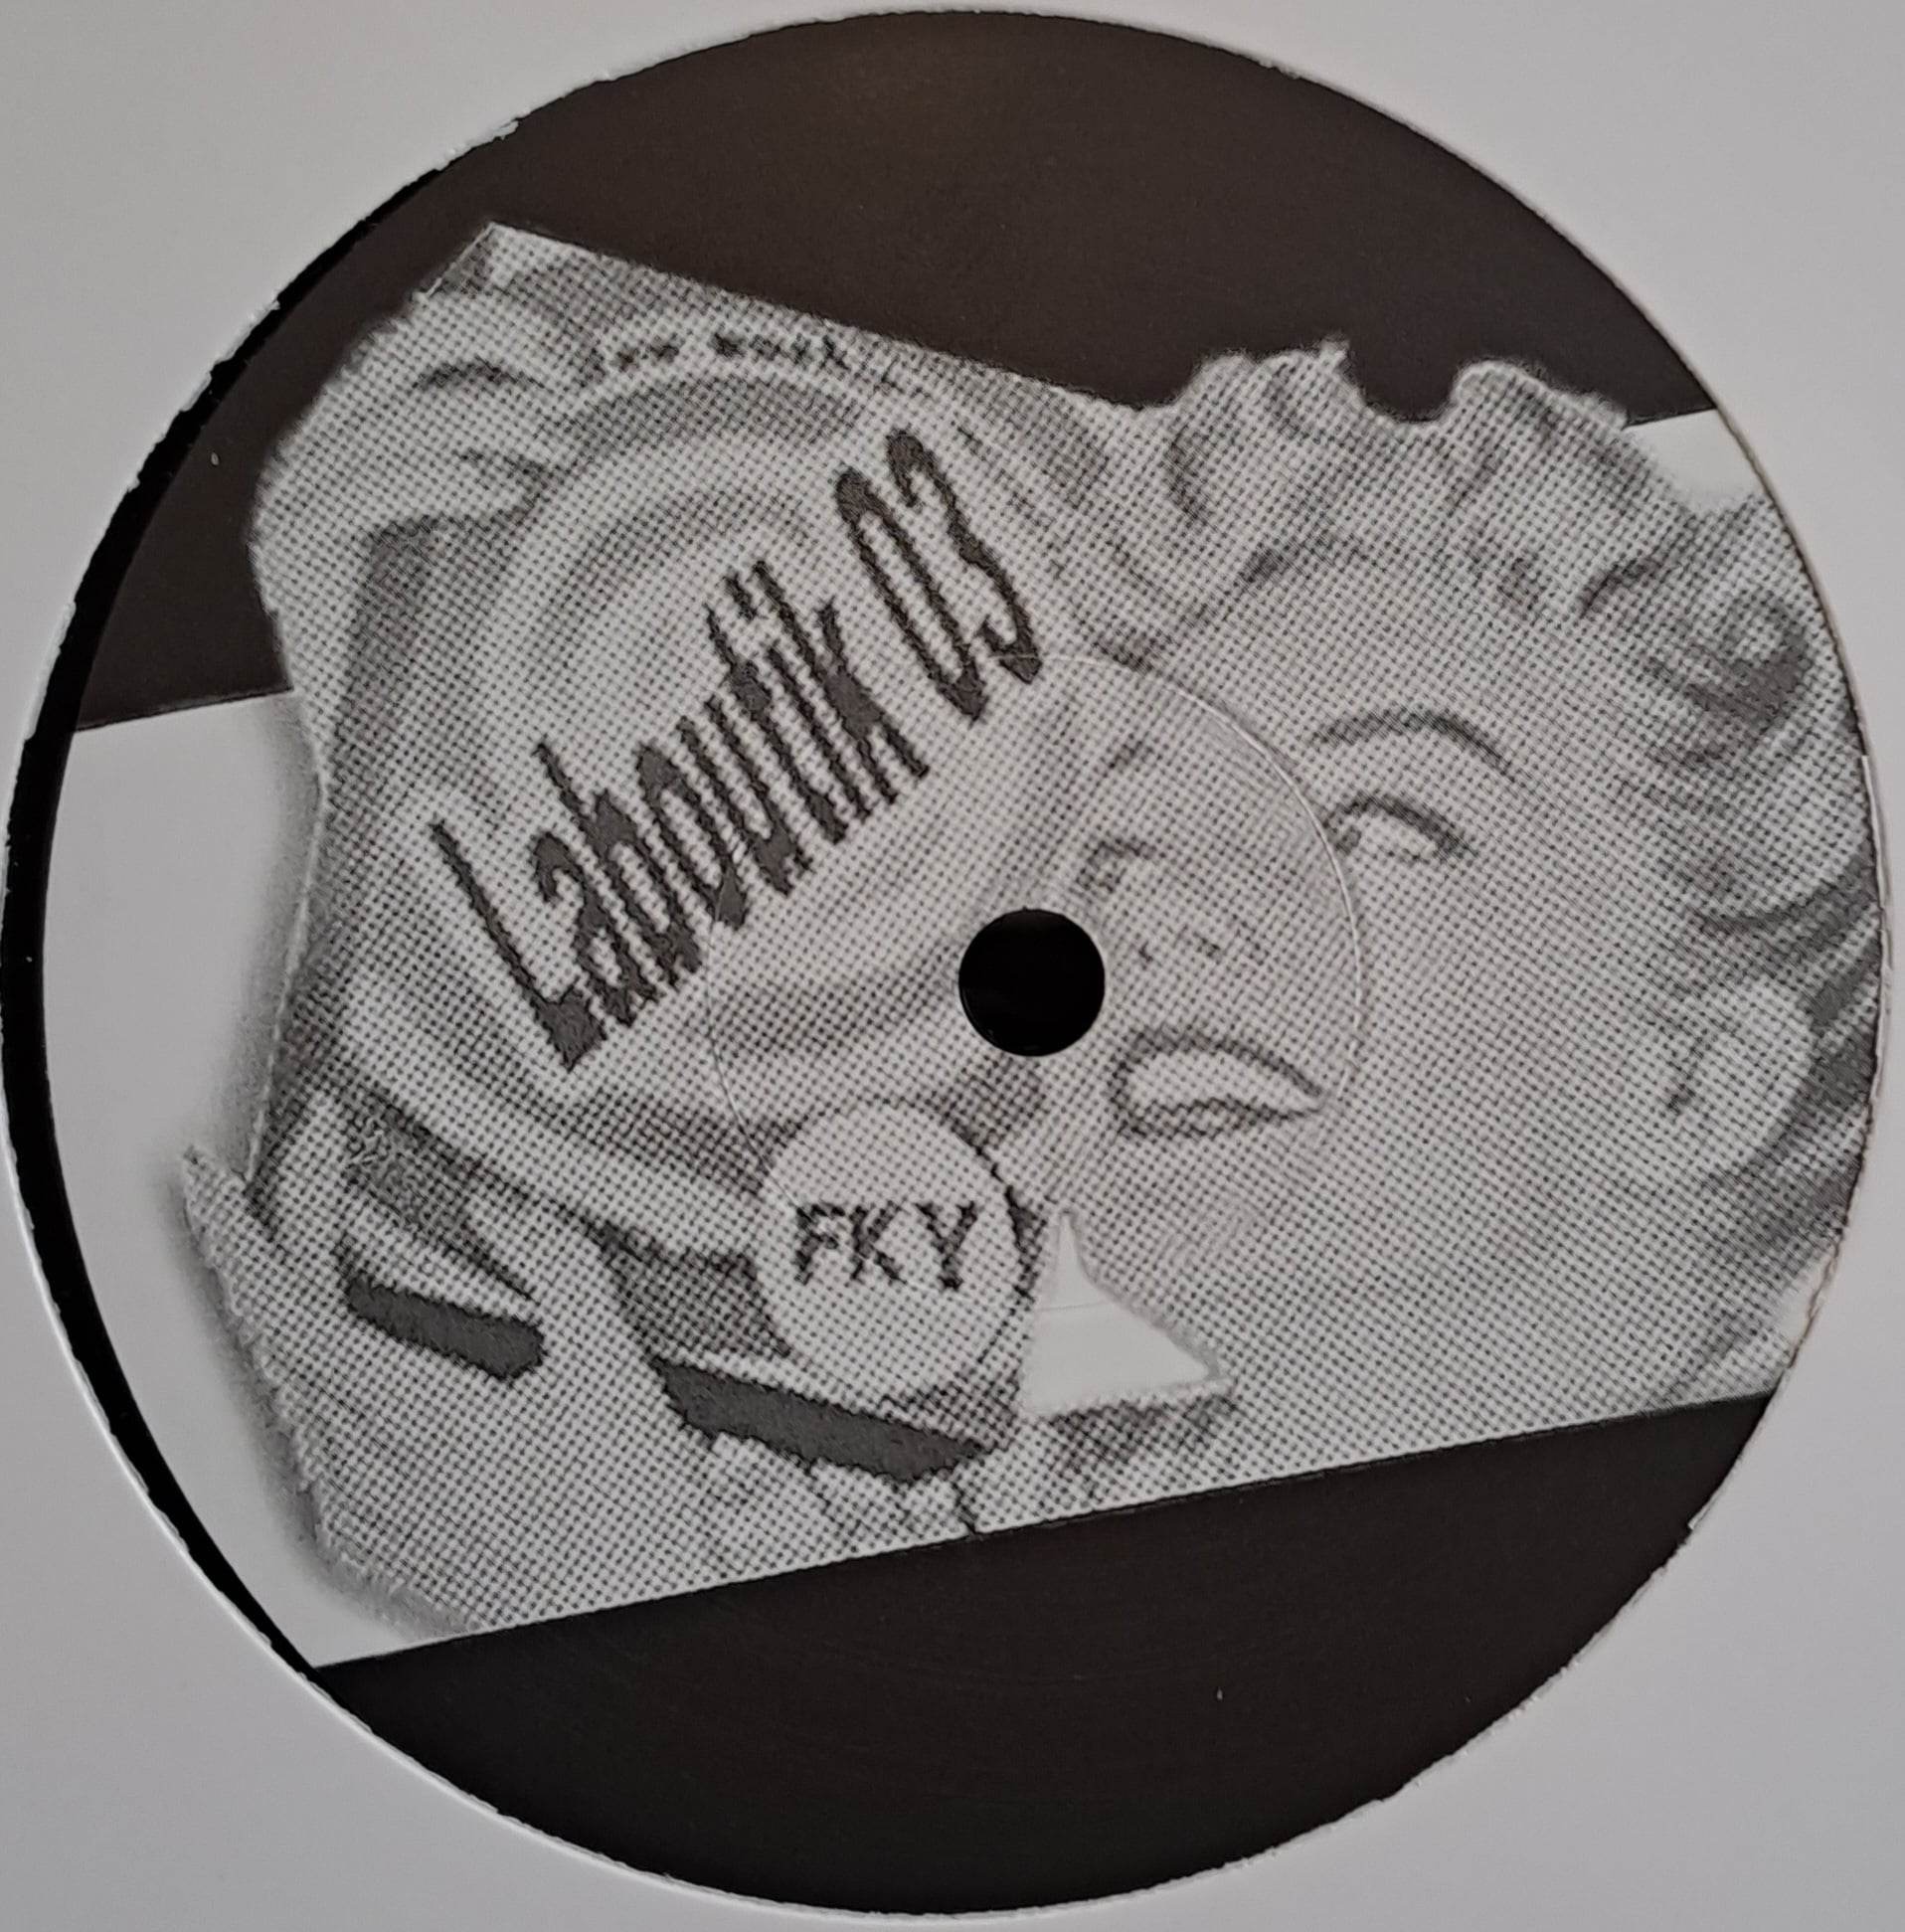 Laboutik 03 RP (toute dernière copie en stock) - vinyle freetekno